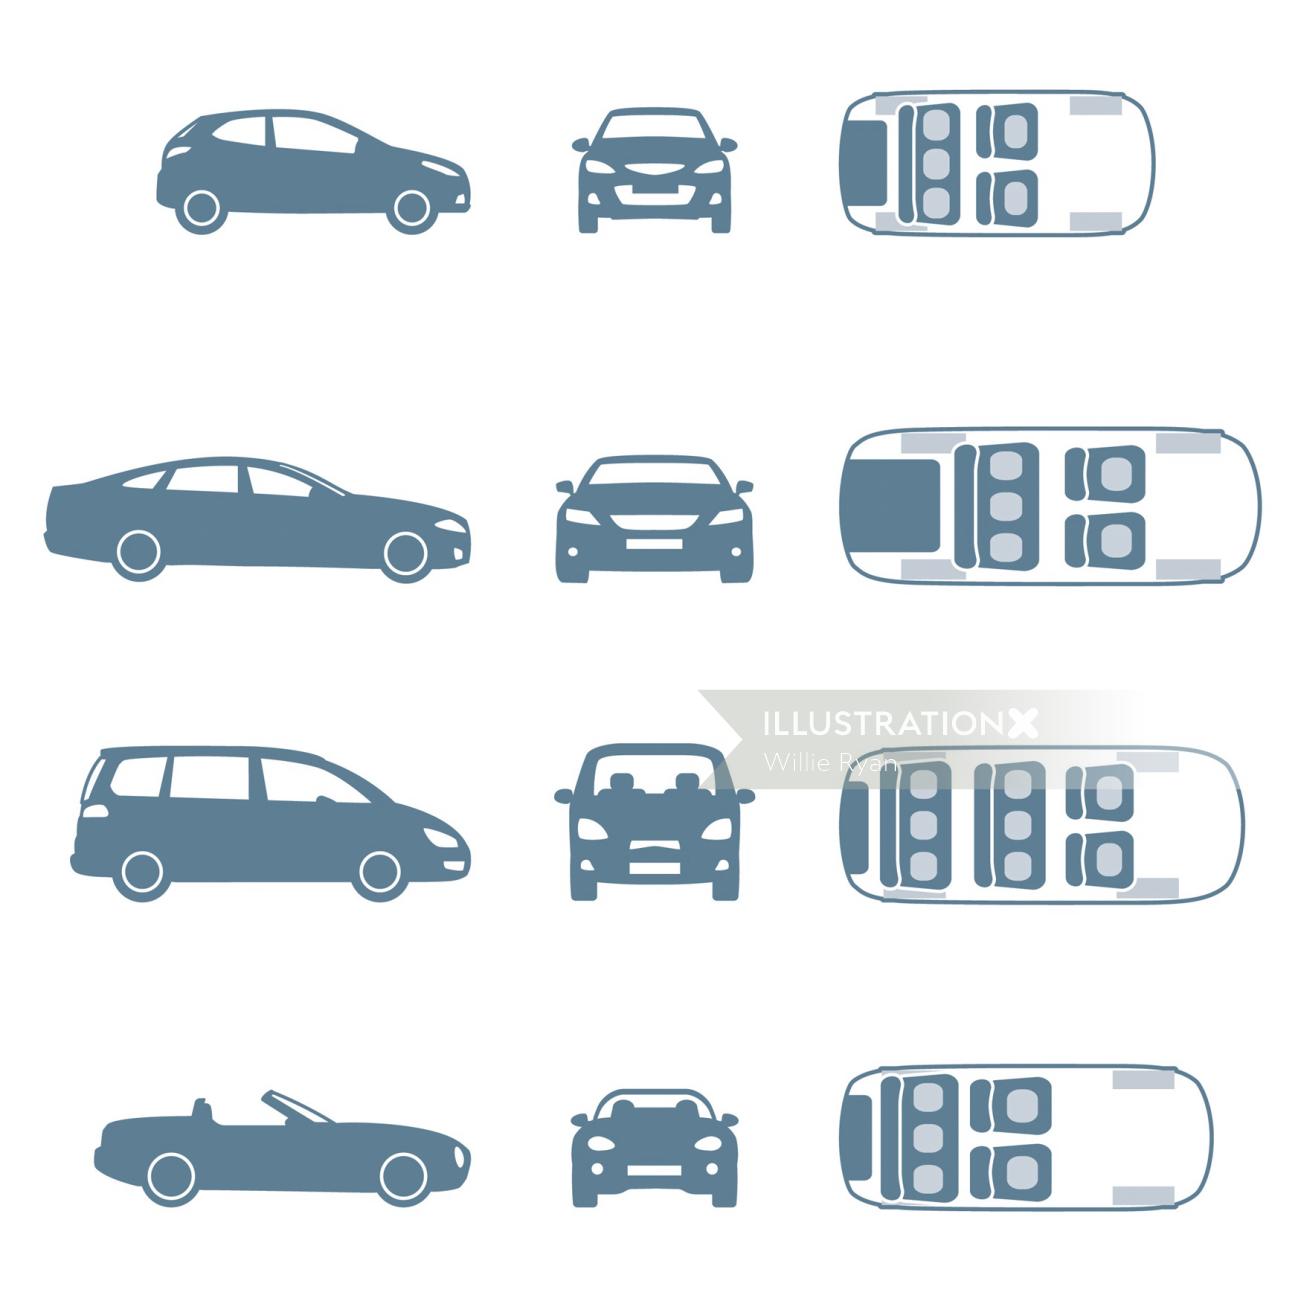 Illustration vectorielle de différents modèles de voitures